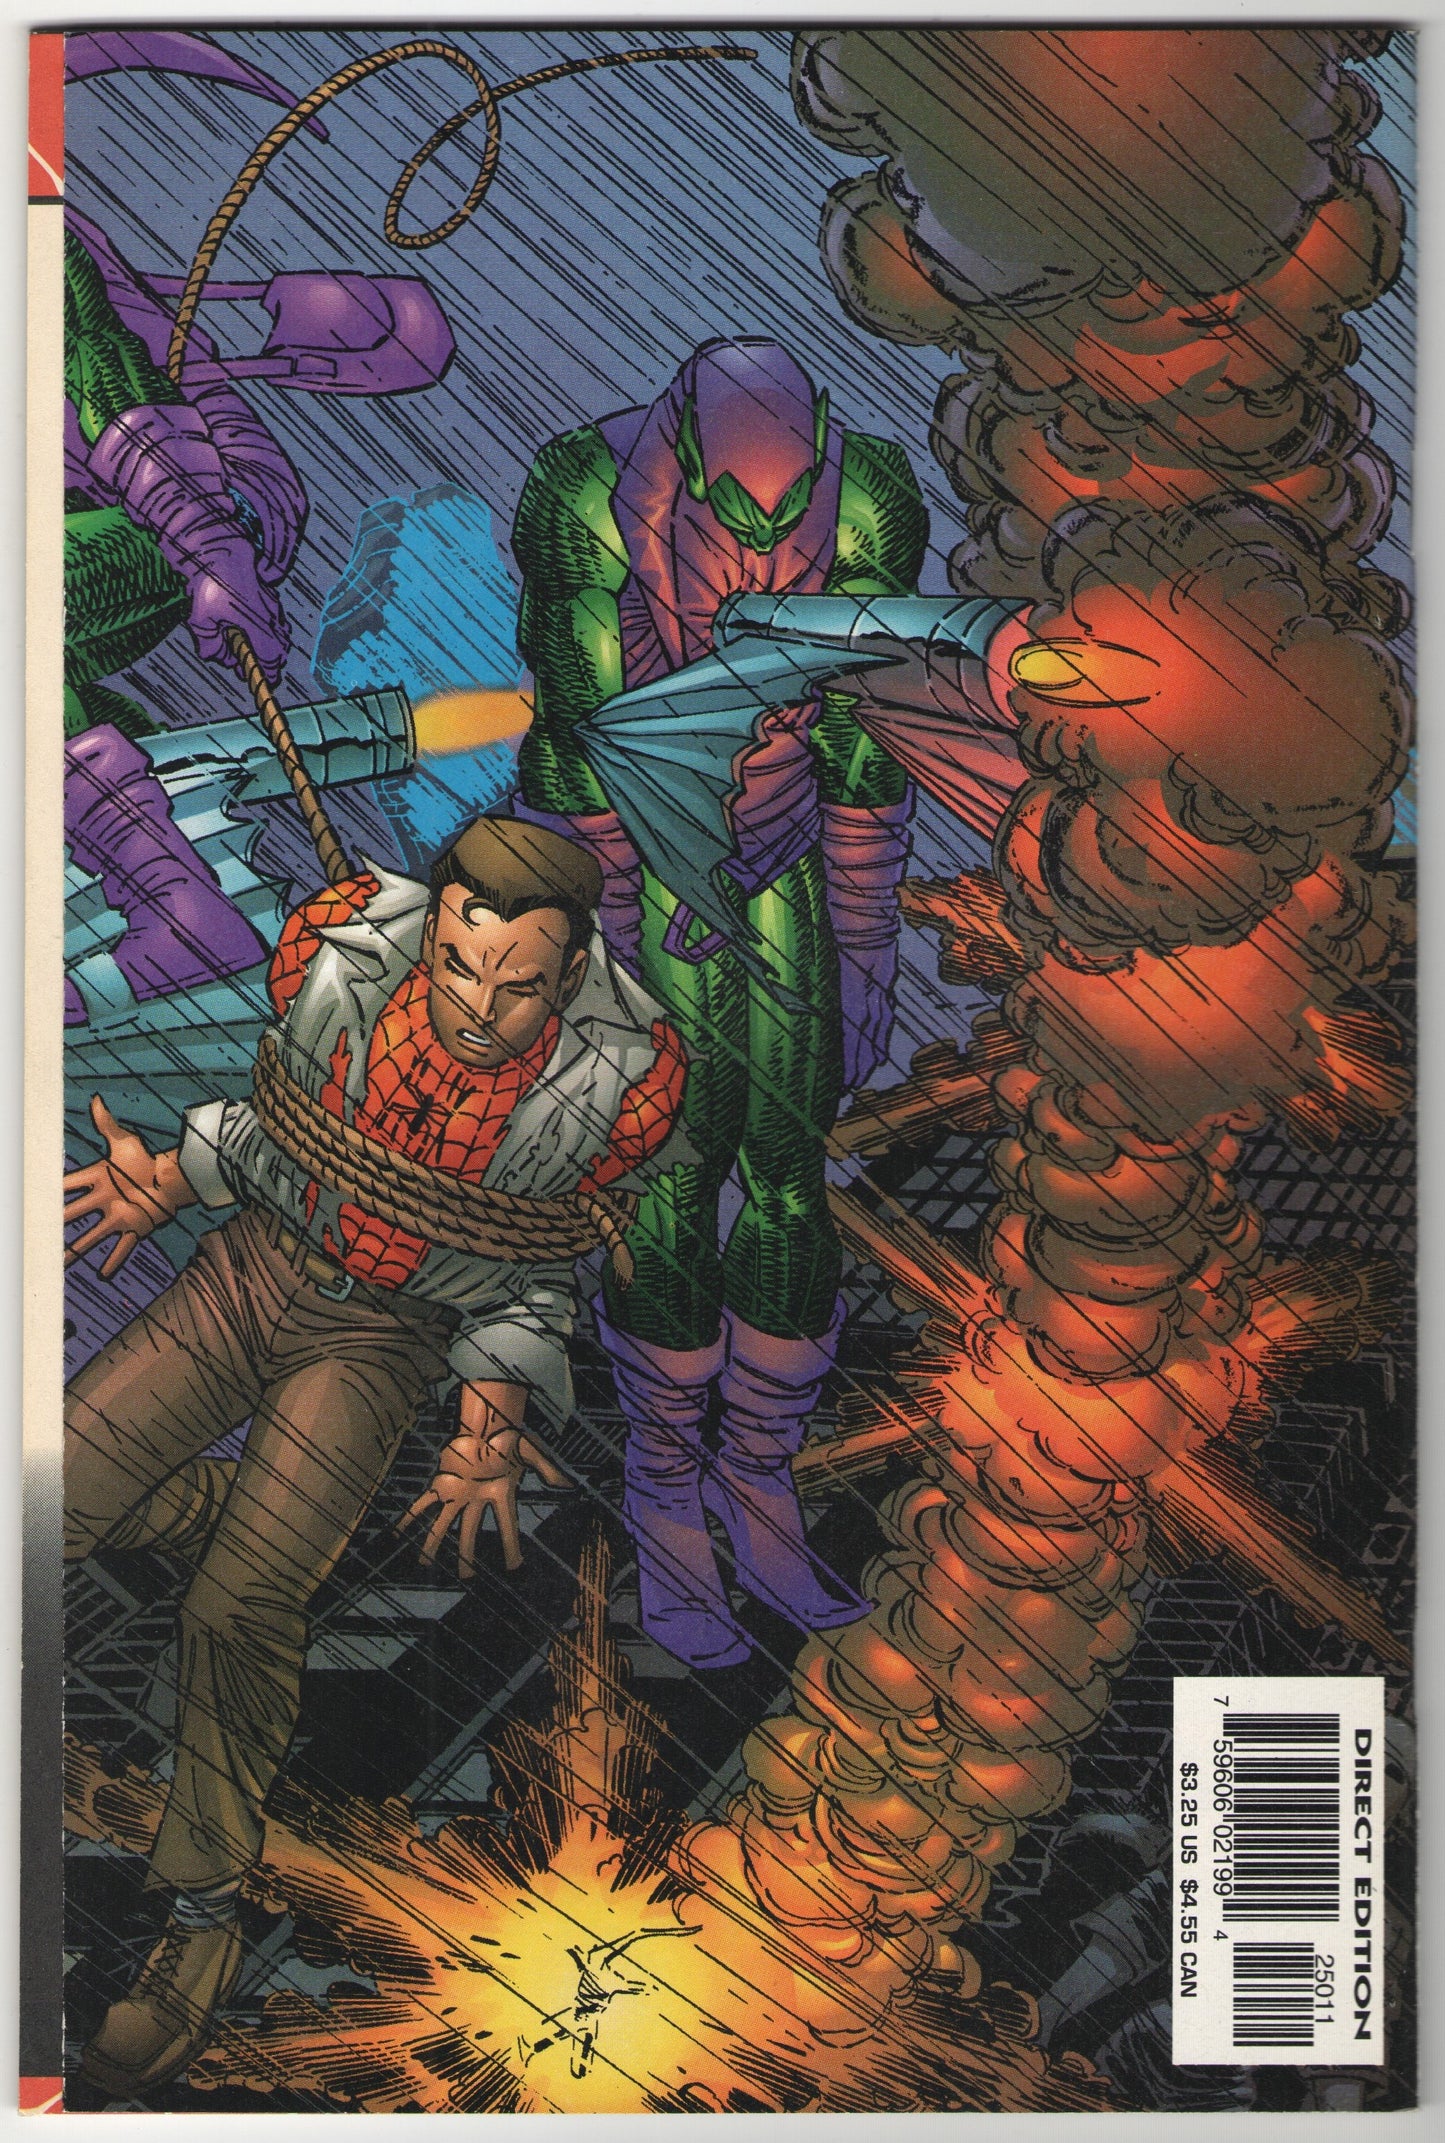 Spectacular Spider-Man #250 (1997)